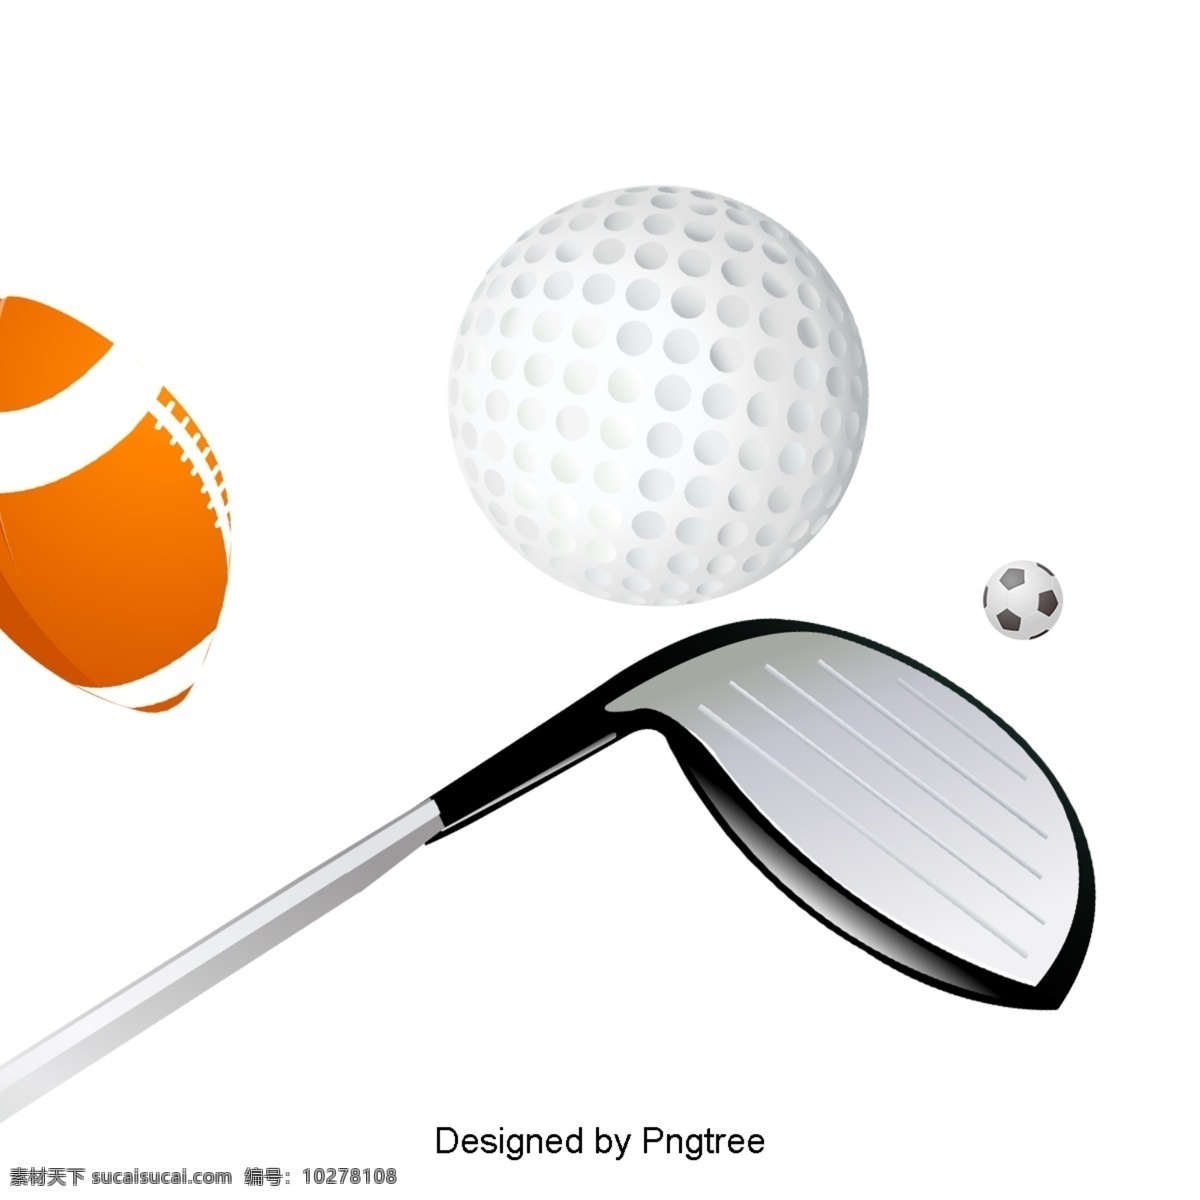 卡通 运动 健身器材 球类 游戏 棒球 高尔夫 健身 设备 工具 健康